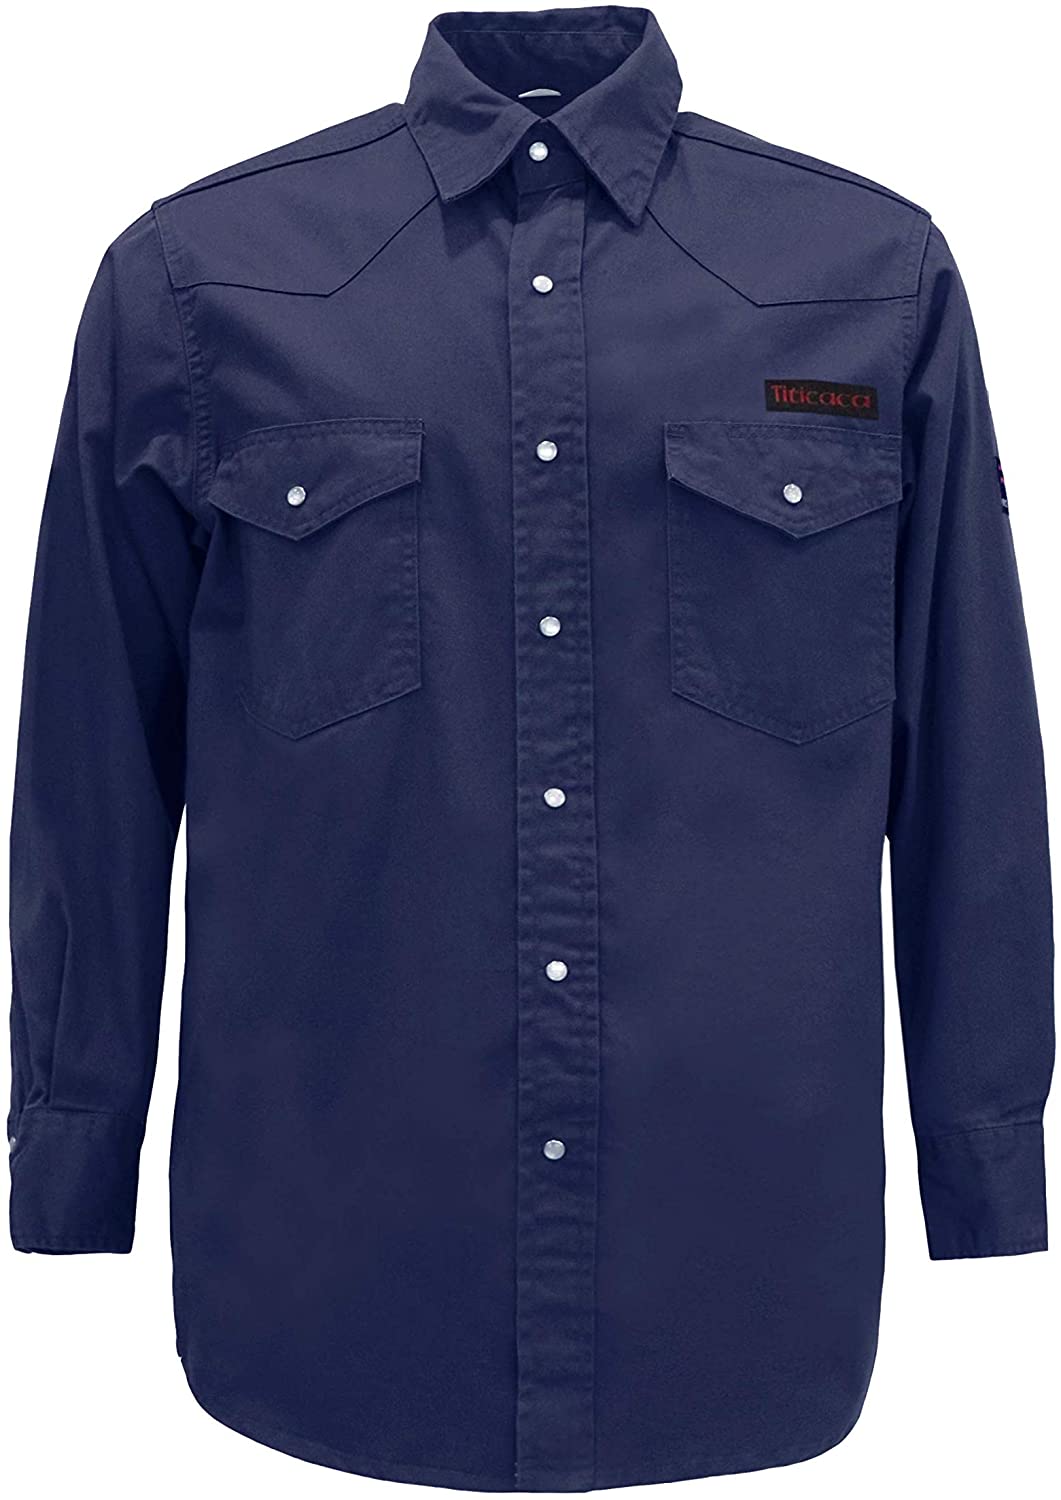 Titicaca FR Shirt Flame Resistant Men Cotton Lightweight Long Sleeve Navy shirt 